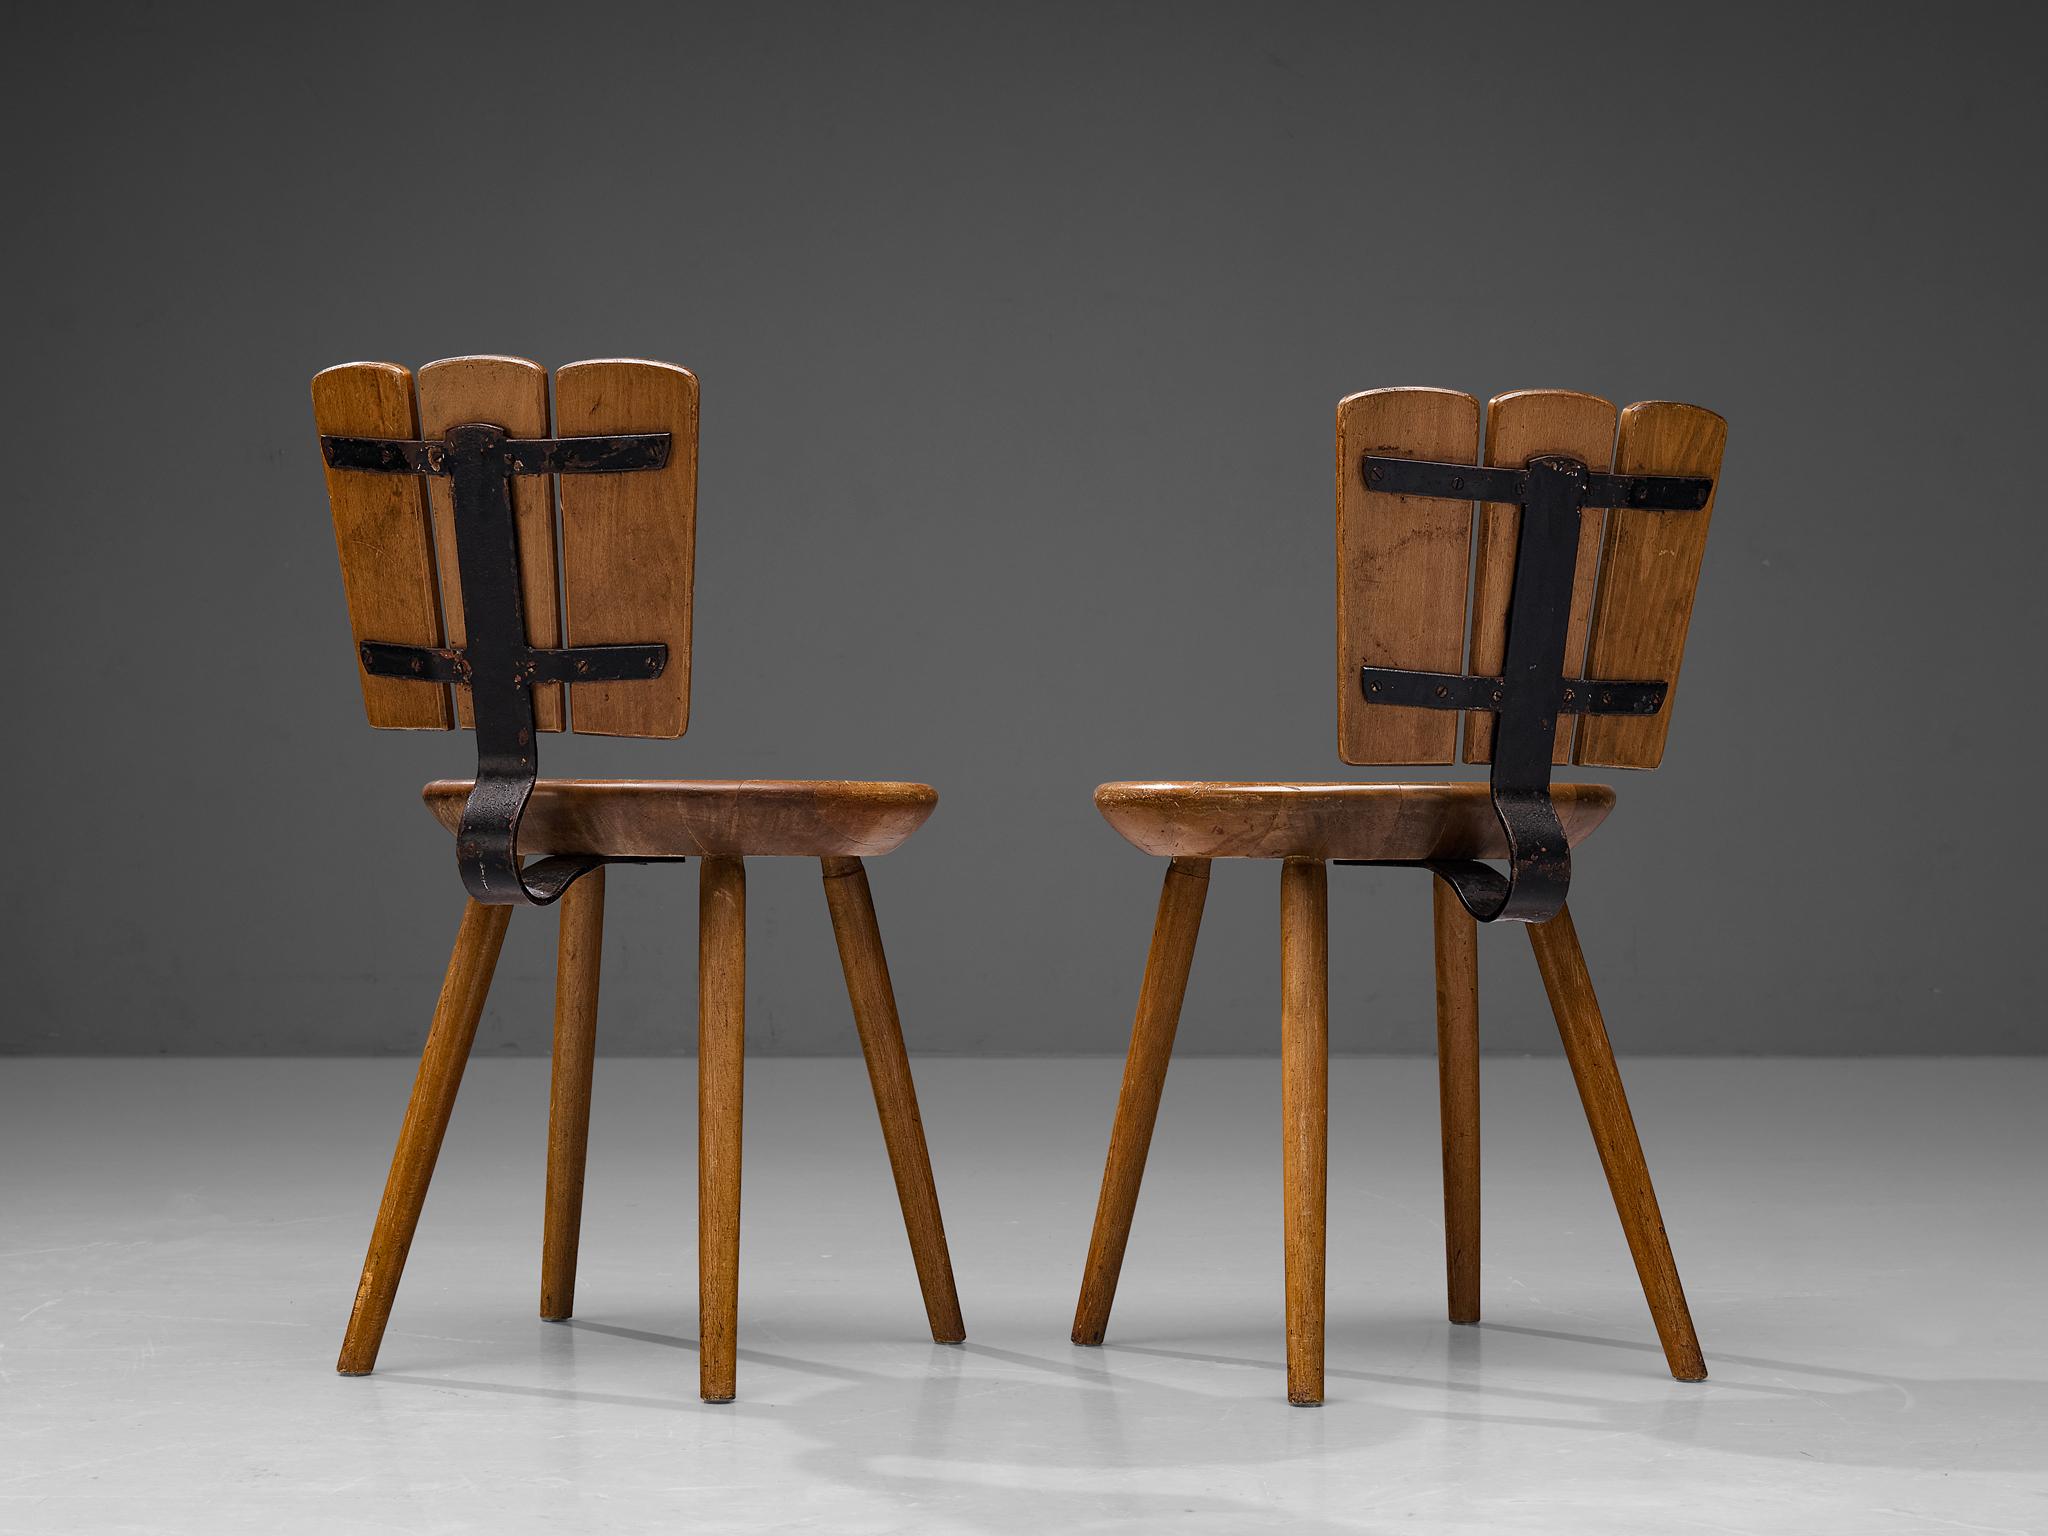 Paar Esszimmerstühle, gebeizte Buche, Gusseisen, Niederlande, 1970er Jahre. 

Rustikales Paar niederländischer Esszimmerstühle aus den 1970er Jahren. Dieses Design aus gebeizter Buche zeichnet sich durch eine geschwungene gusseiserne